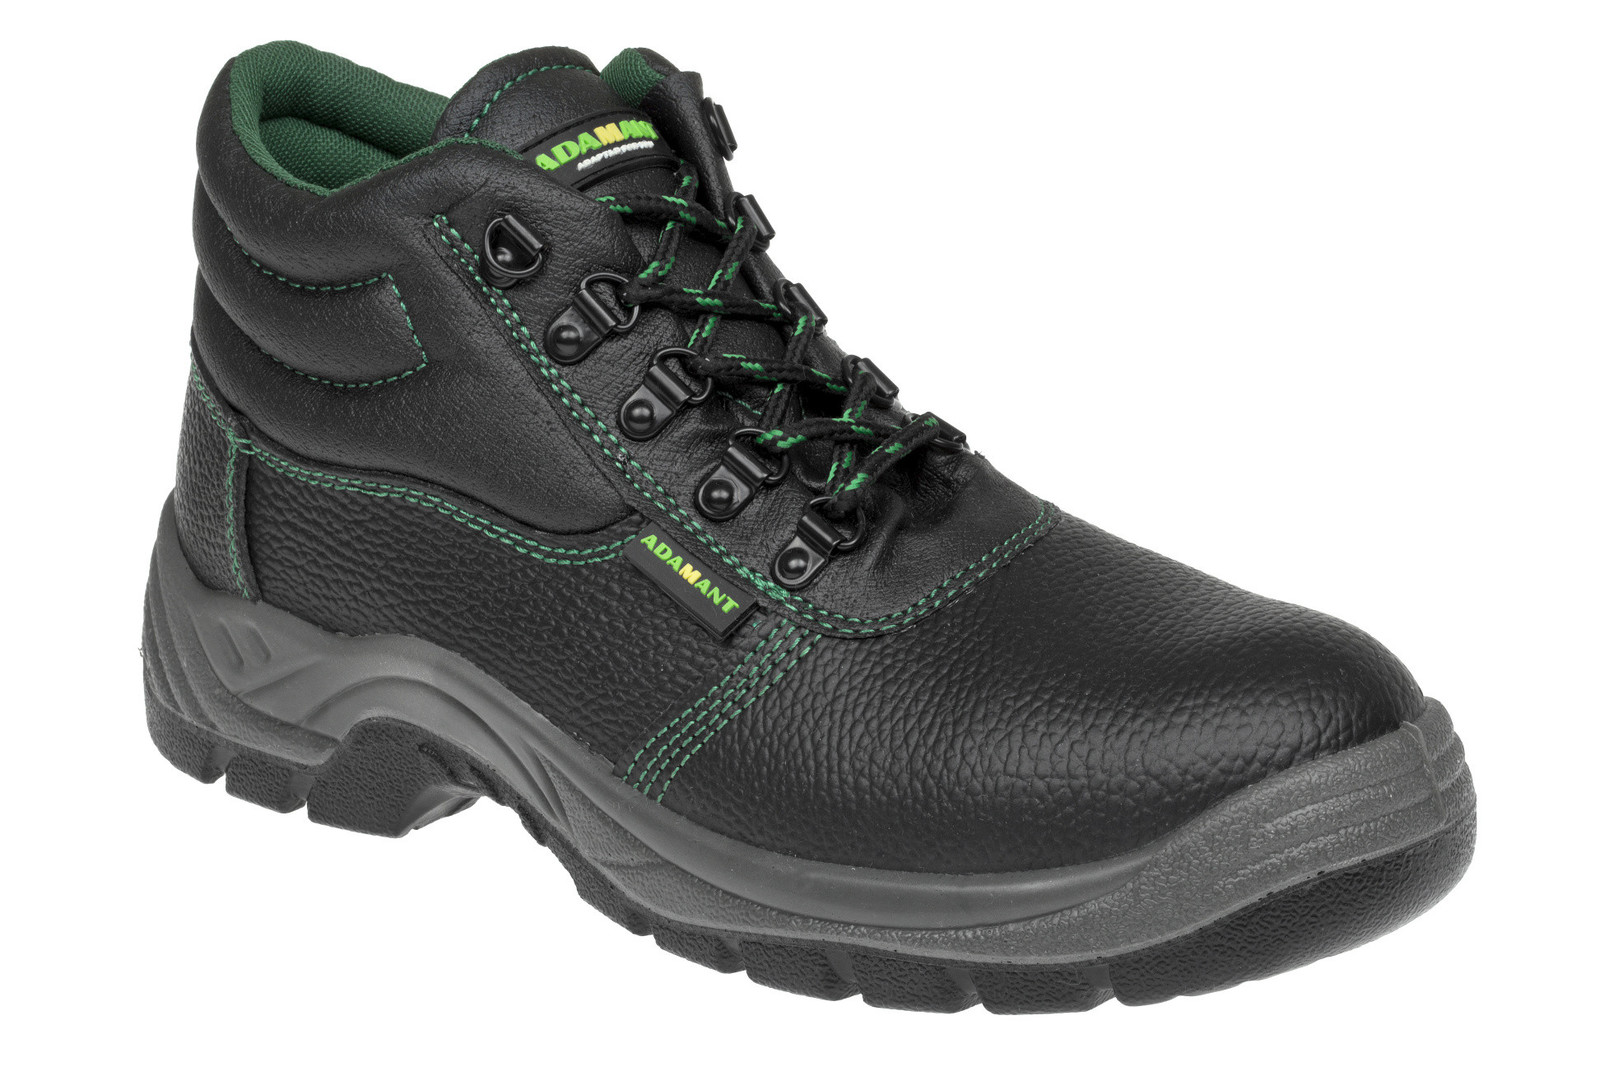 Bezpečnostná obuv Adamant Classic S1P - veľkosť: 47, farba: čierna